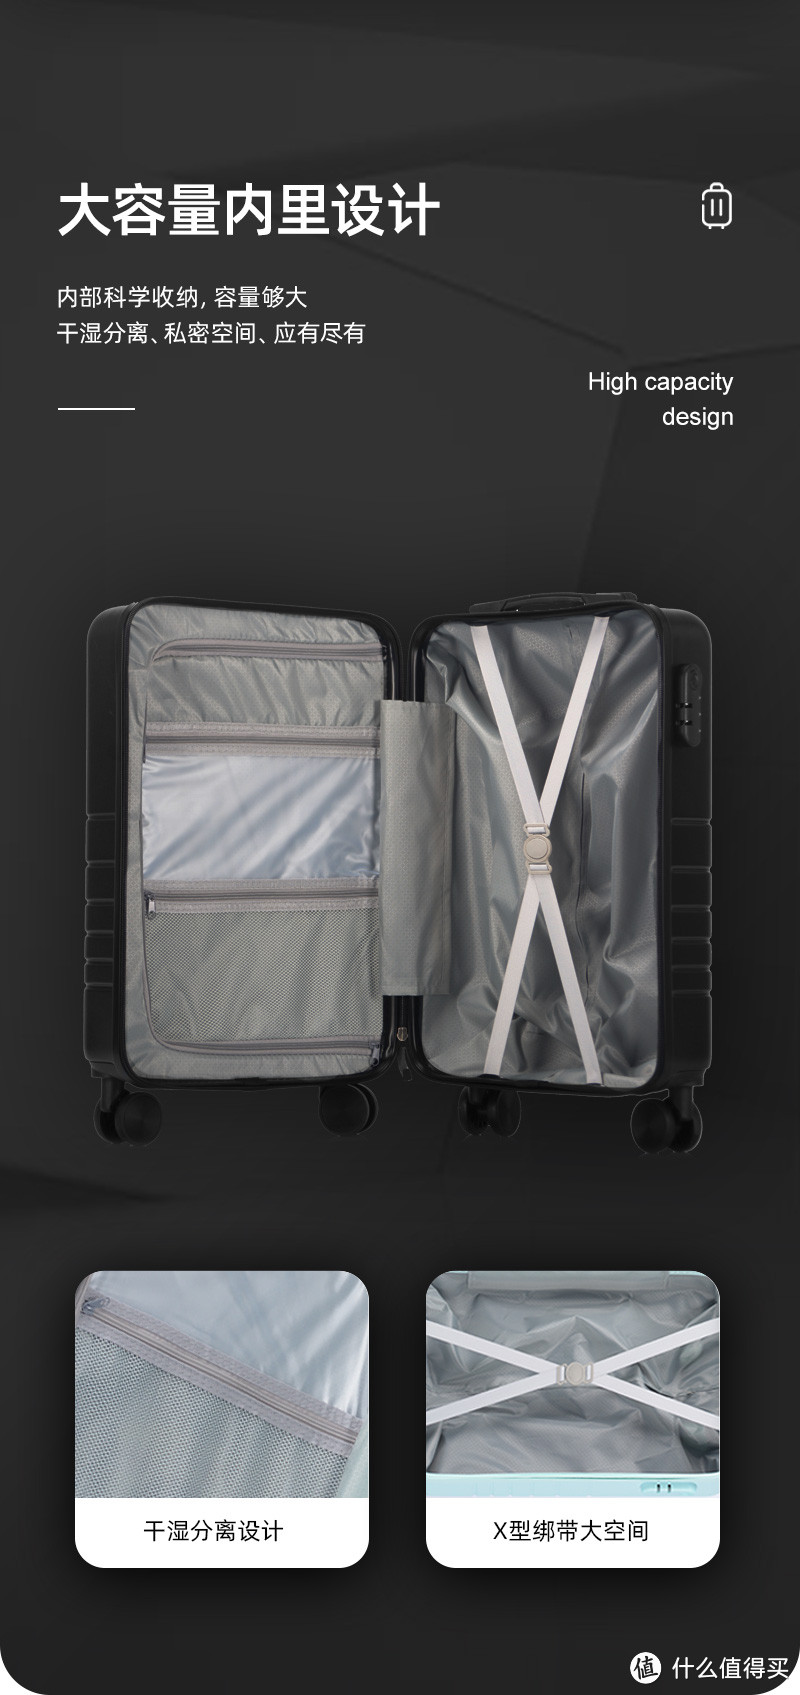 "商务出差新宠！前开口设计行李箱，高效装载，轻松旅行！